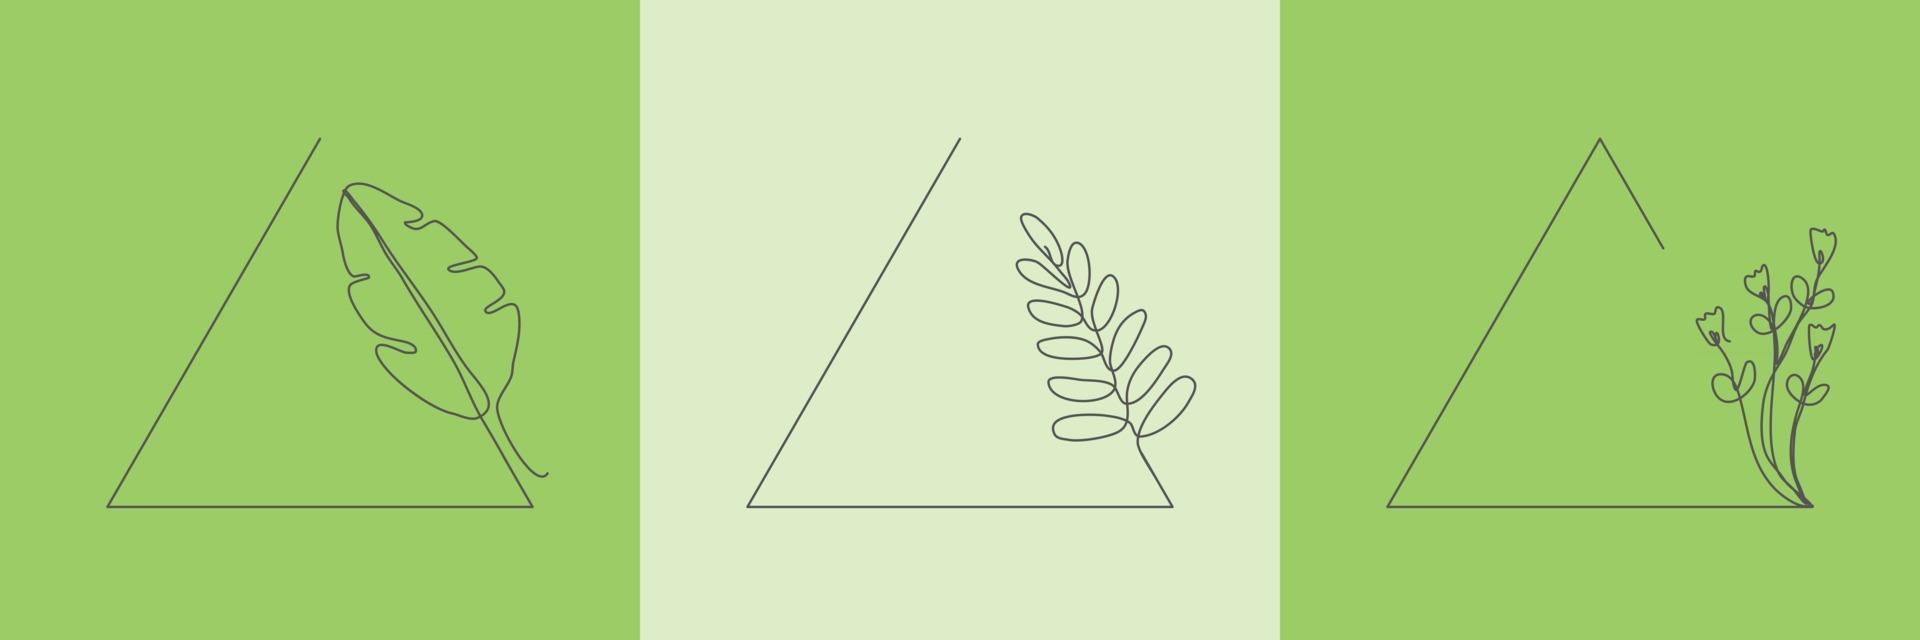 Establecer hierba orgánica floral dibujada a mano, hojas y flores con marco triangular, elemento decorativo de hoja. Ilustración de vector de arte lineal para redes sociales, boda, invitación, logotipo, cosmética